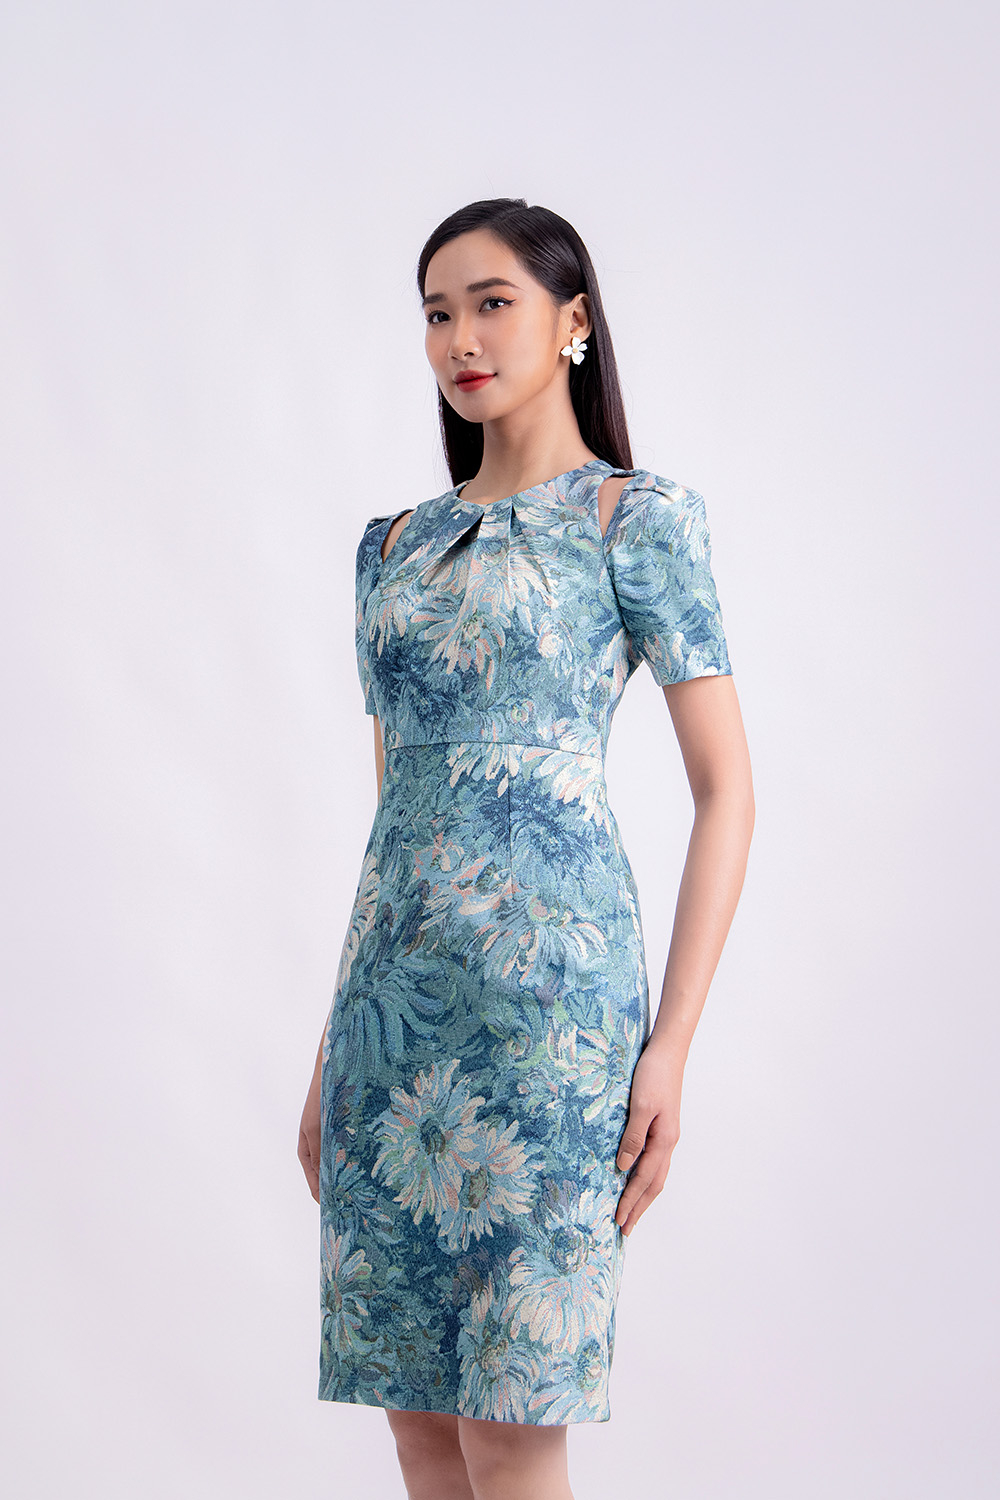 Đầm hoa dáng ôm body vai-cut-out KK120-20 | Thời trang công sở K&K ...